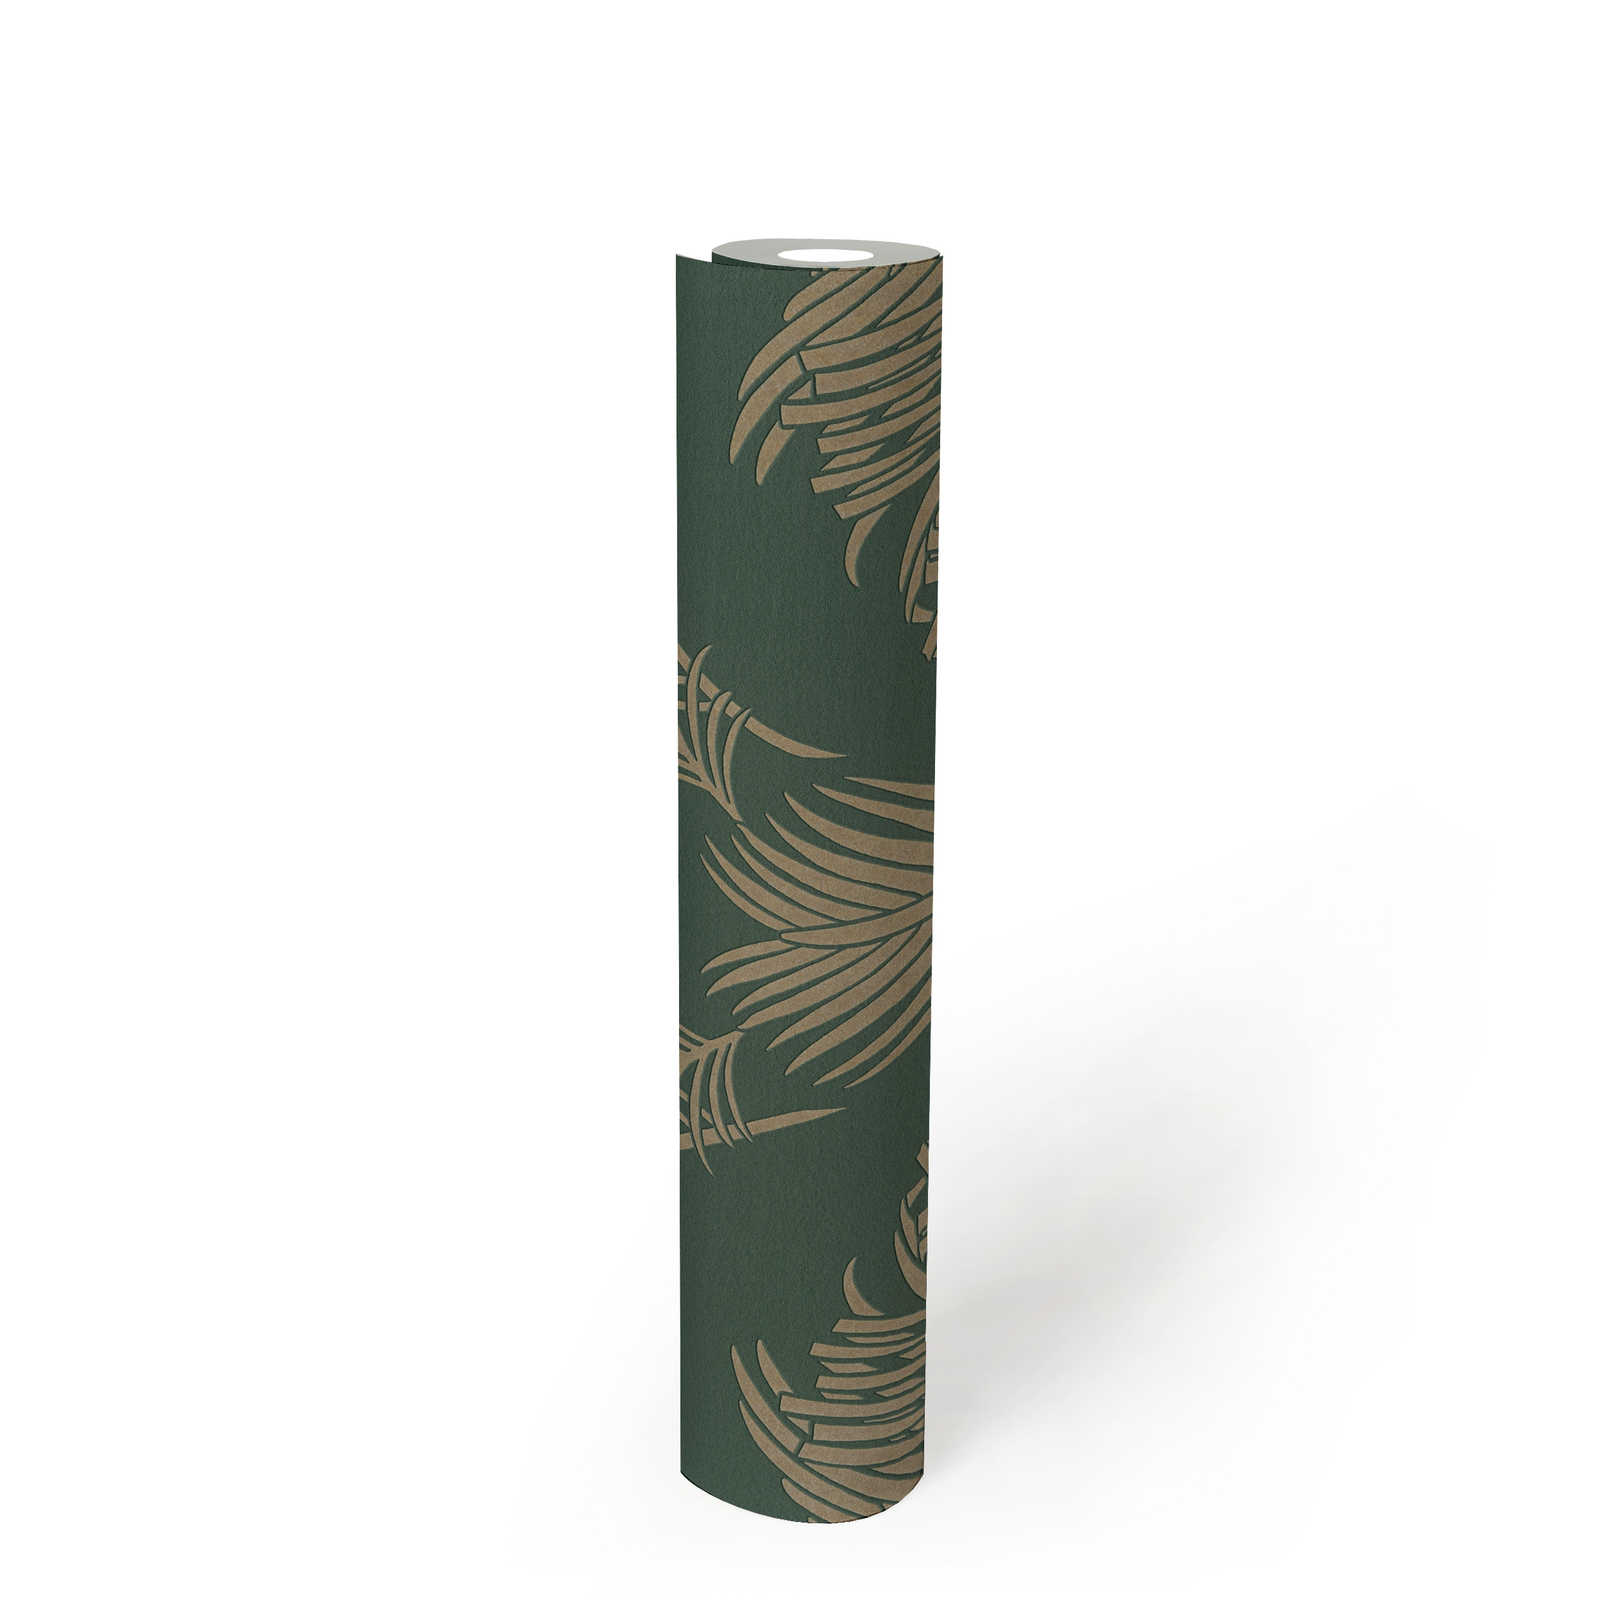             Non-woven wallpaper fir green & gold with palm leaf motif - green, metallic
        